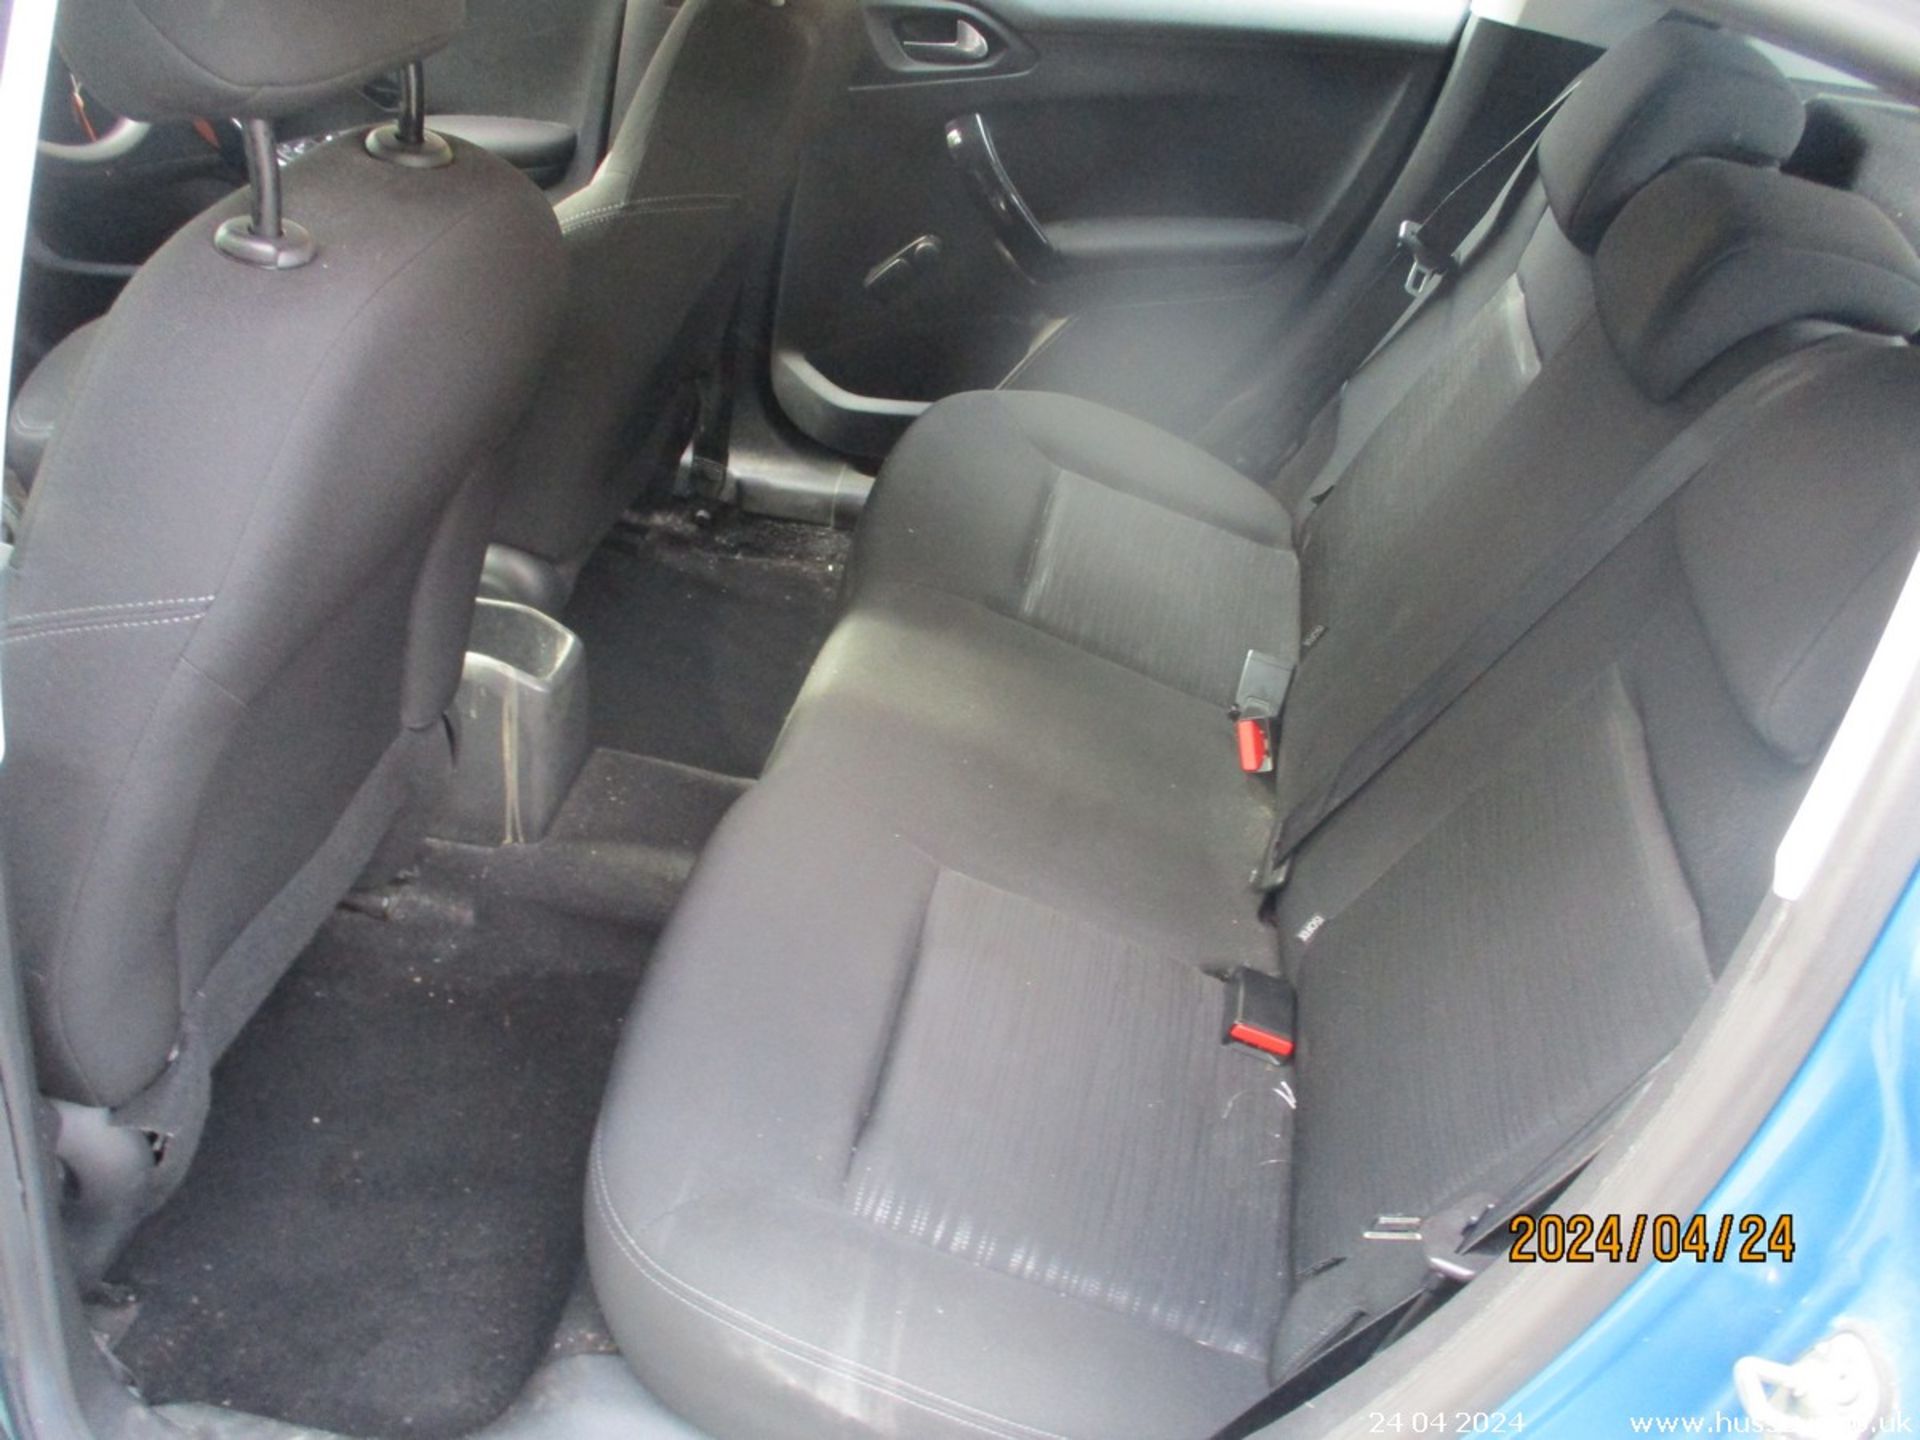 13/62 PEUGEOT 208 ACCESS PLUS - 1199cc 5dr Hatchback (Blue, 83k) - Image 14 of 18